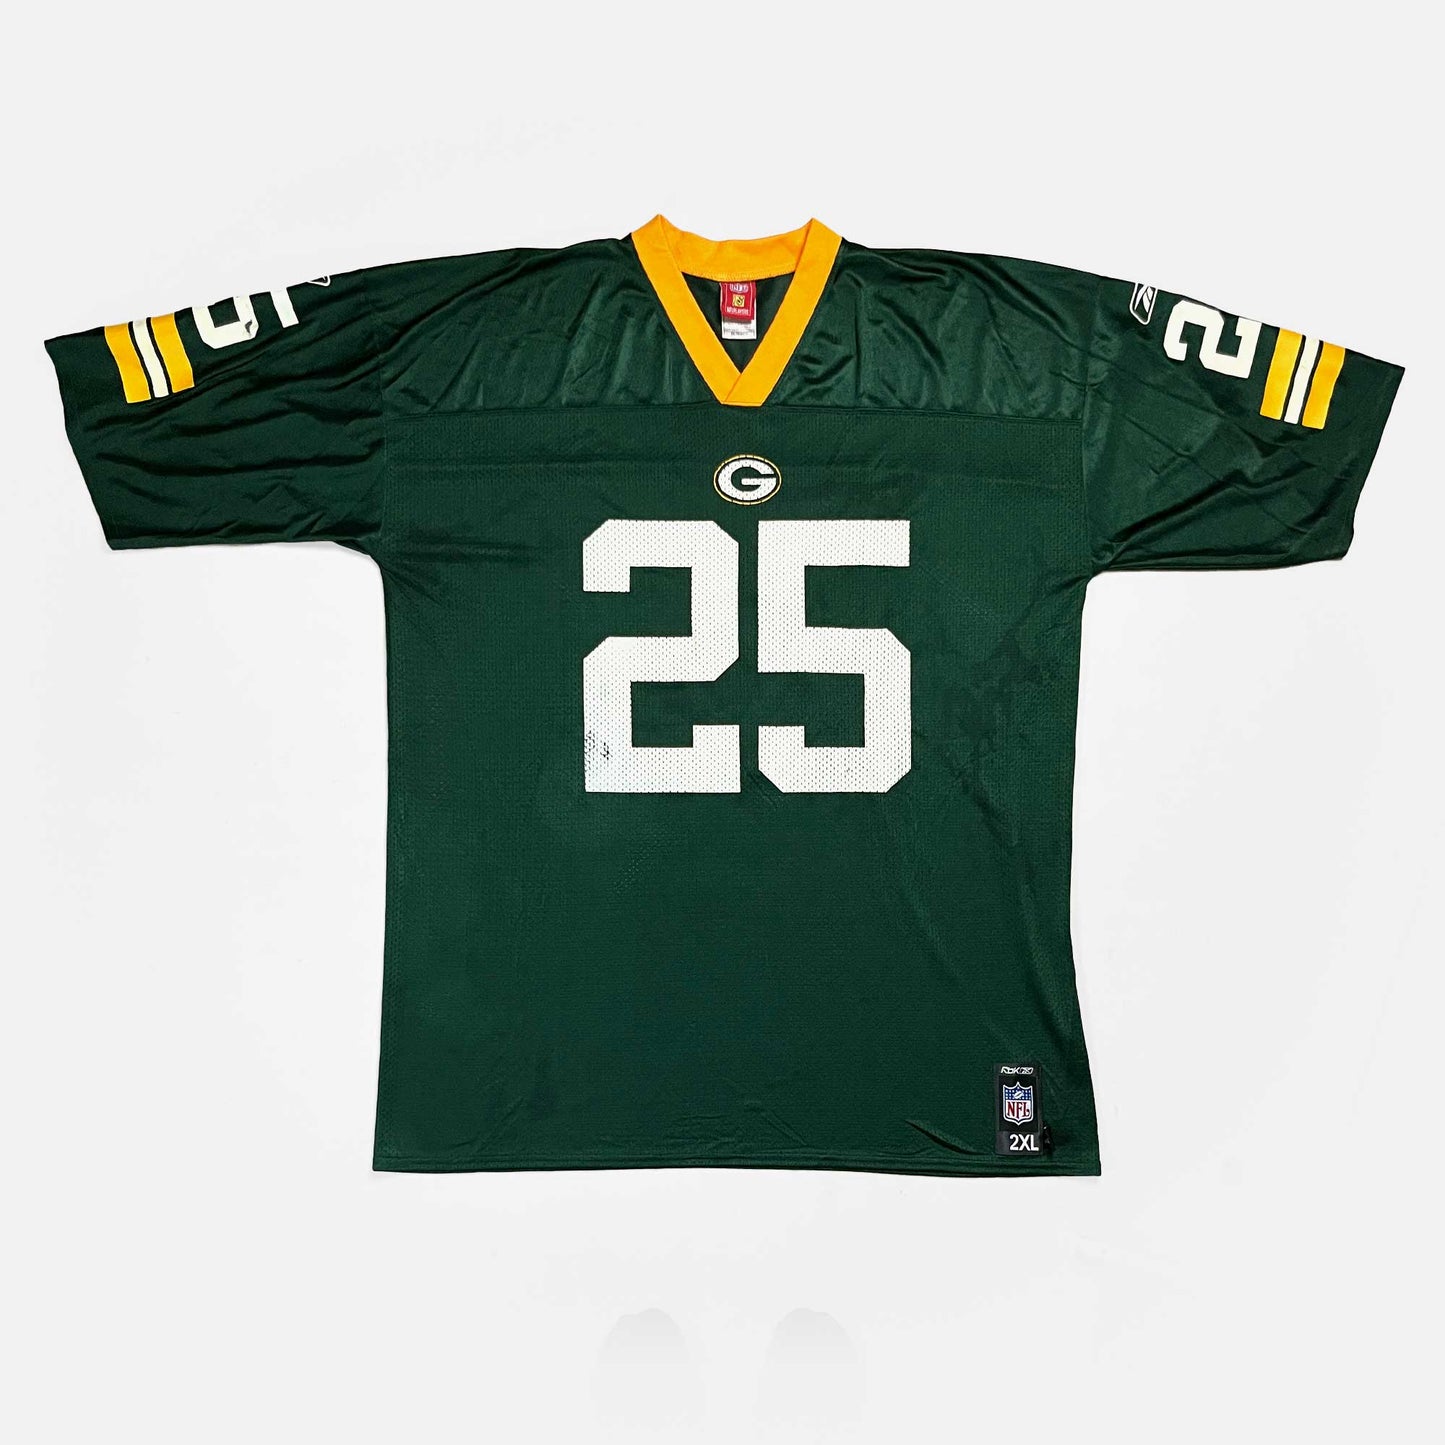 Green Bay Packers - Ryan Grant - Größe XXL - Reebok - NFL Trikot